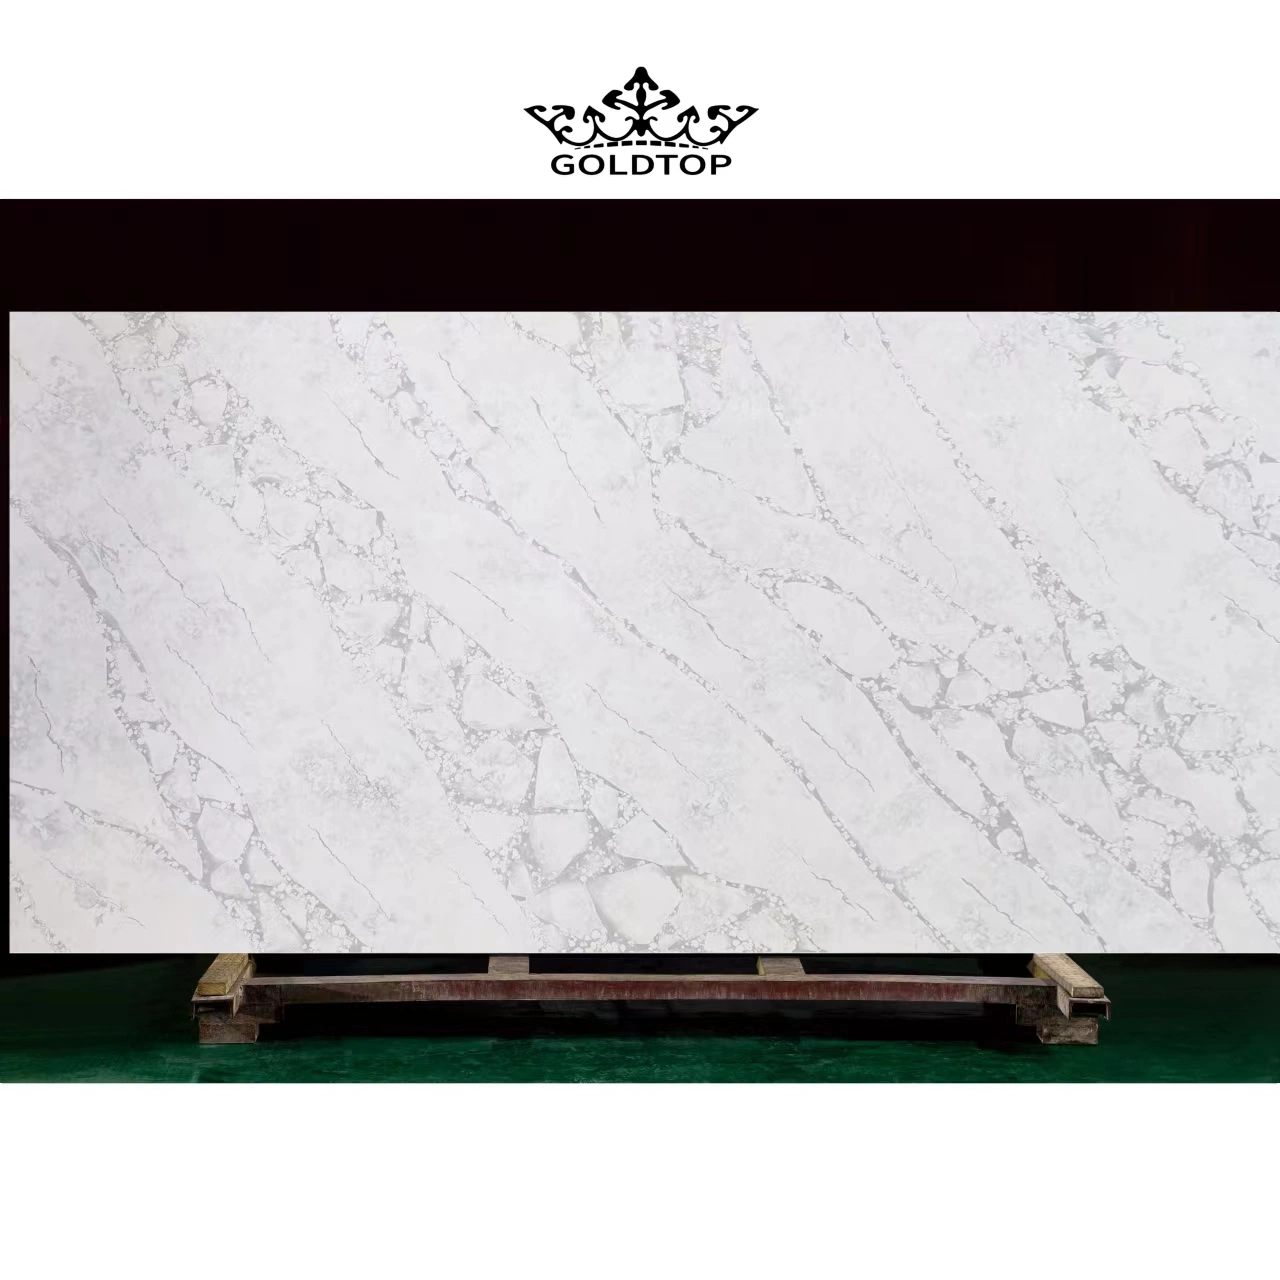 La piedra artificial de alto grado pulido / pulido superficie Cocina / Baño Countertop concreto Cuarzo Hermes para el hogar